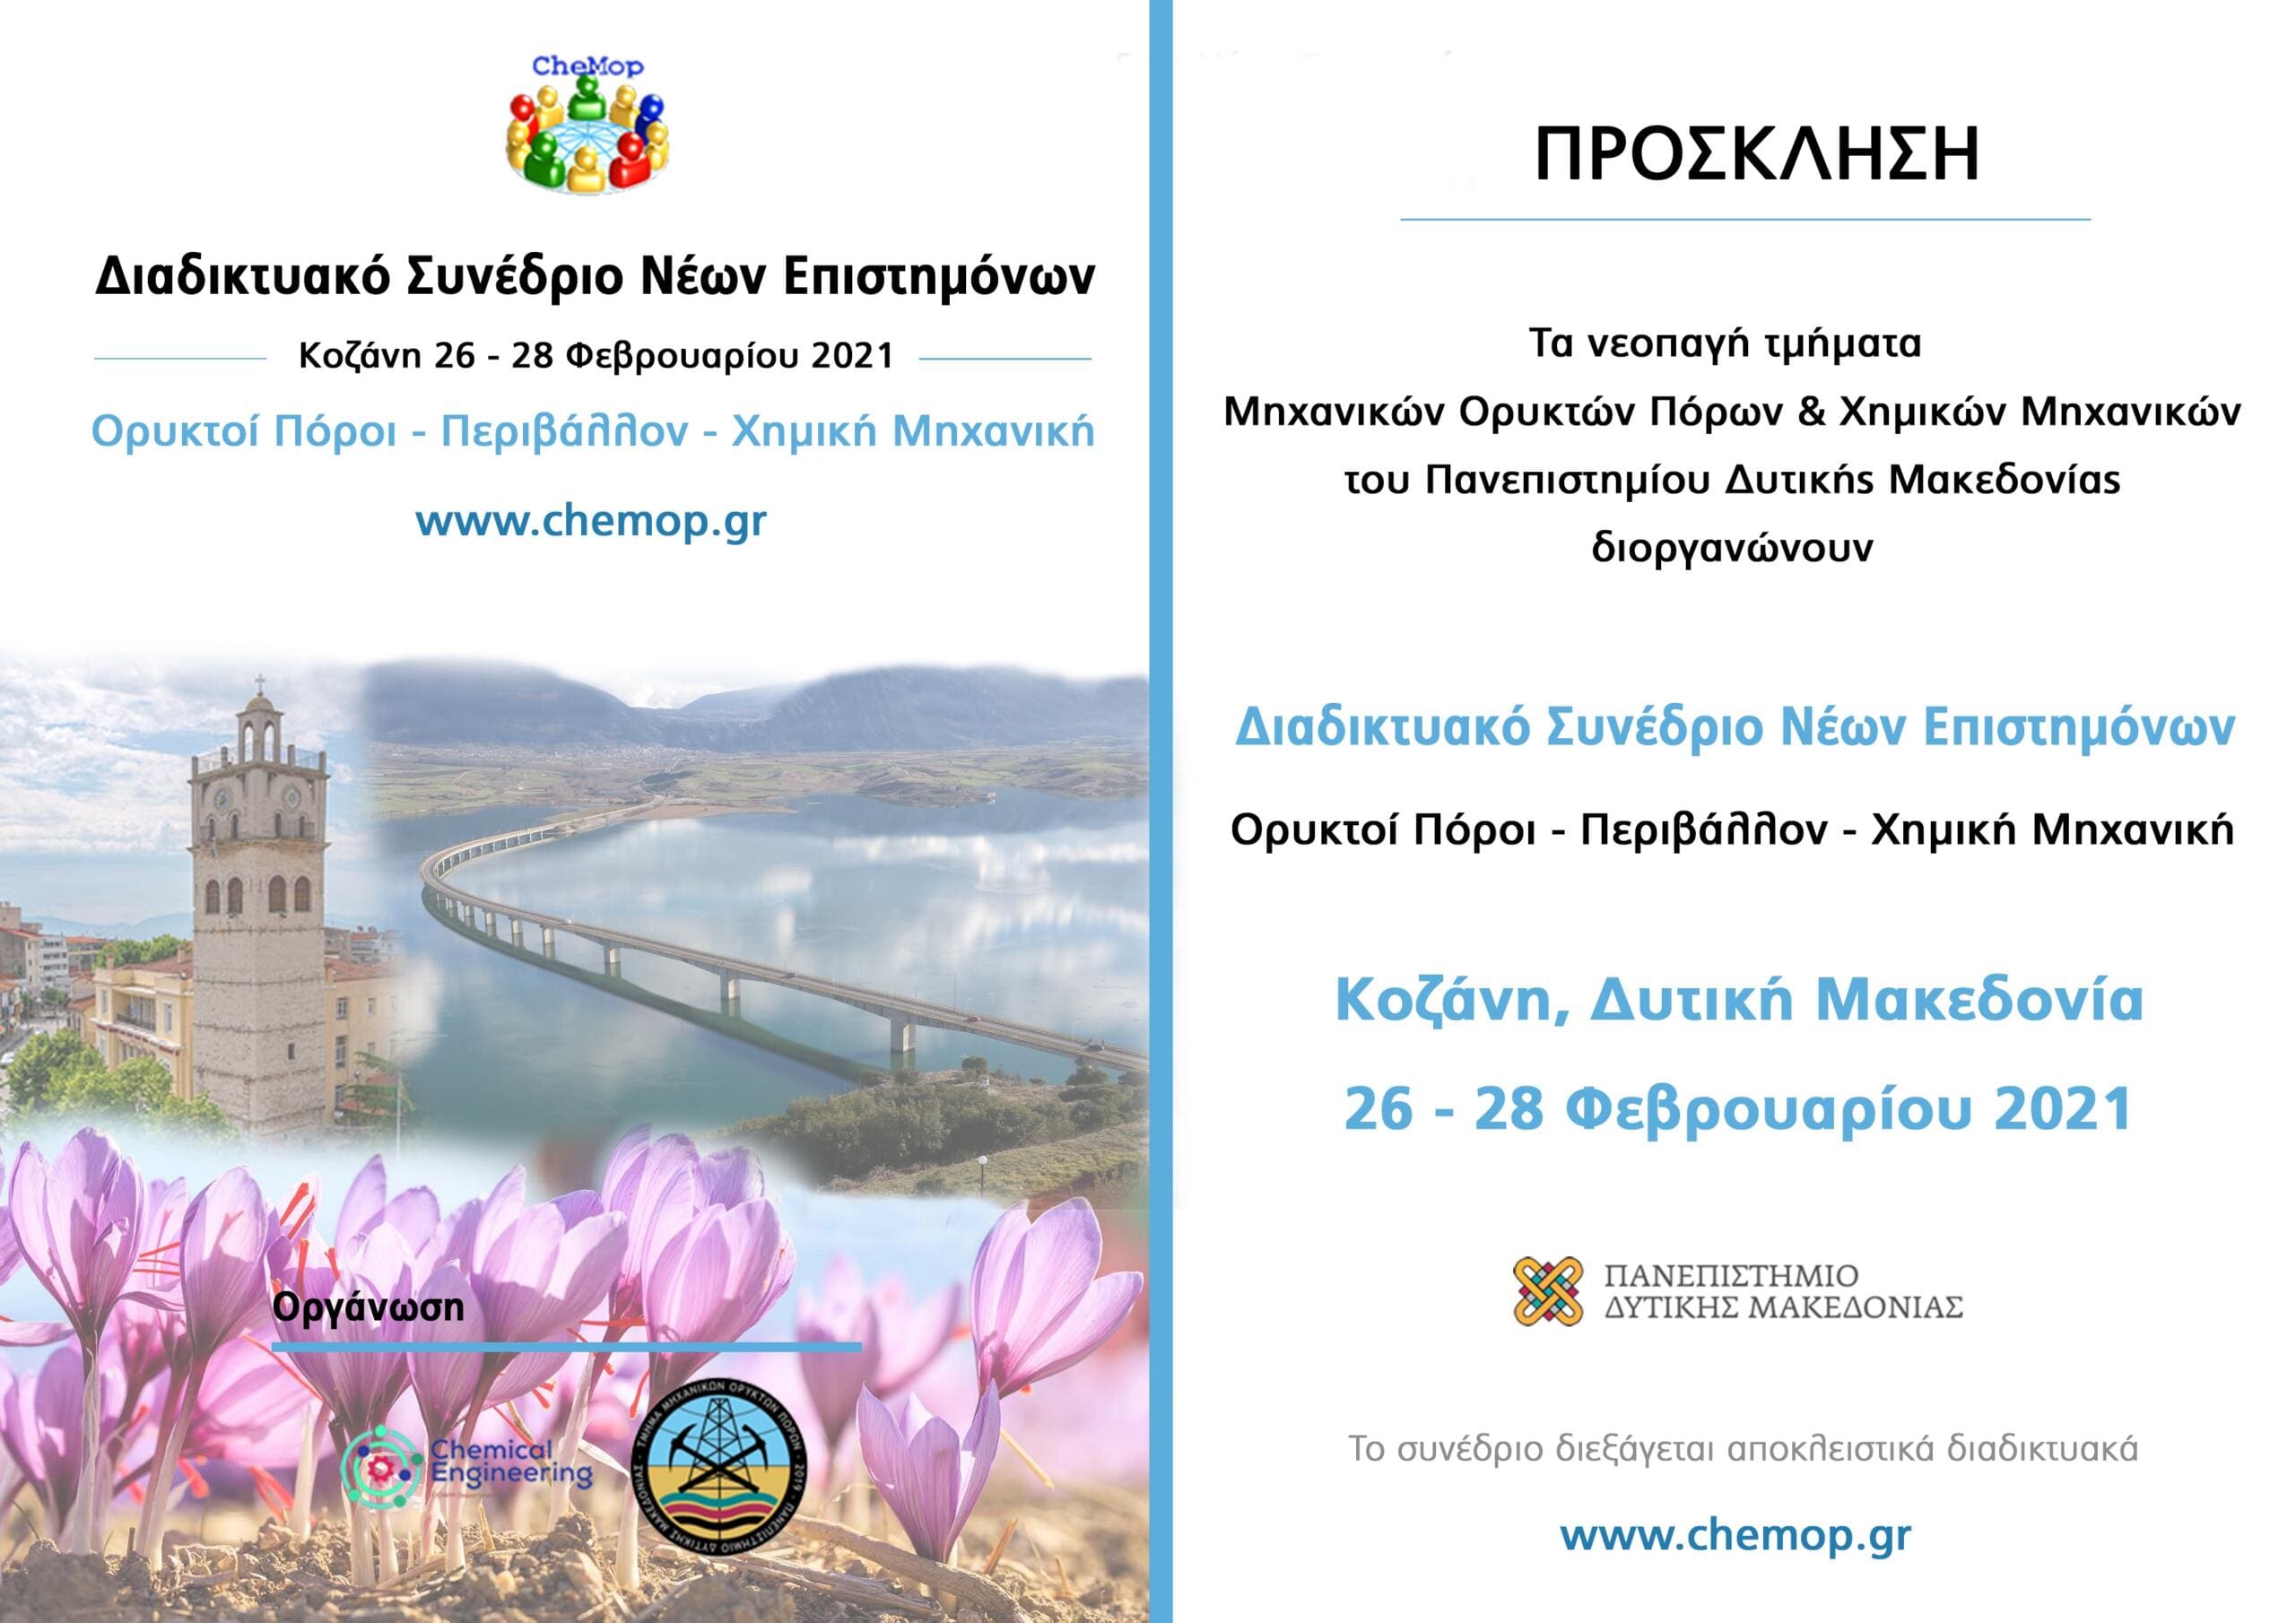 Δυτική Μακεδονία: 1ο Διαδικτυακό Συνέδριο Νέων Επιστημόνων «Ορυκτοί Πόροι-Περιβάλλον-Χημική Μηχανική»